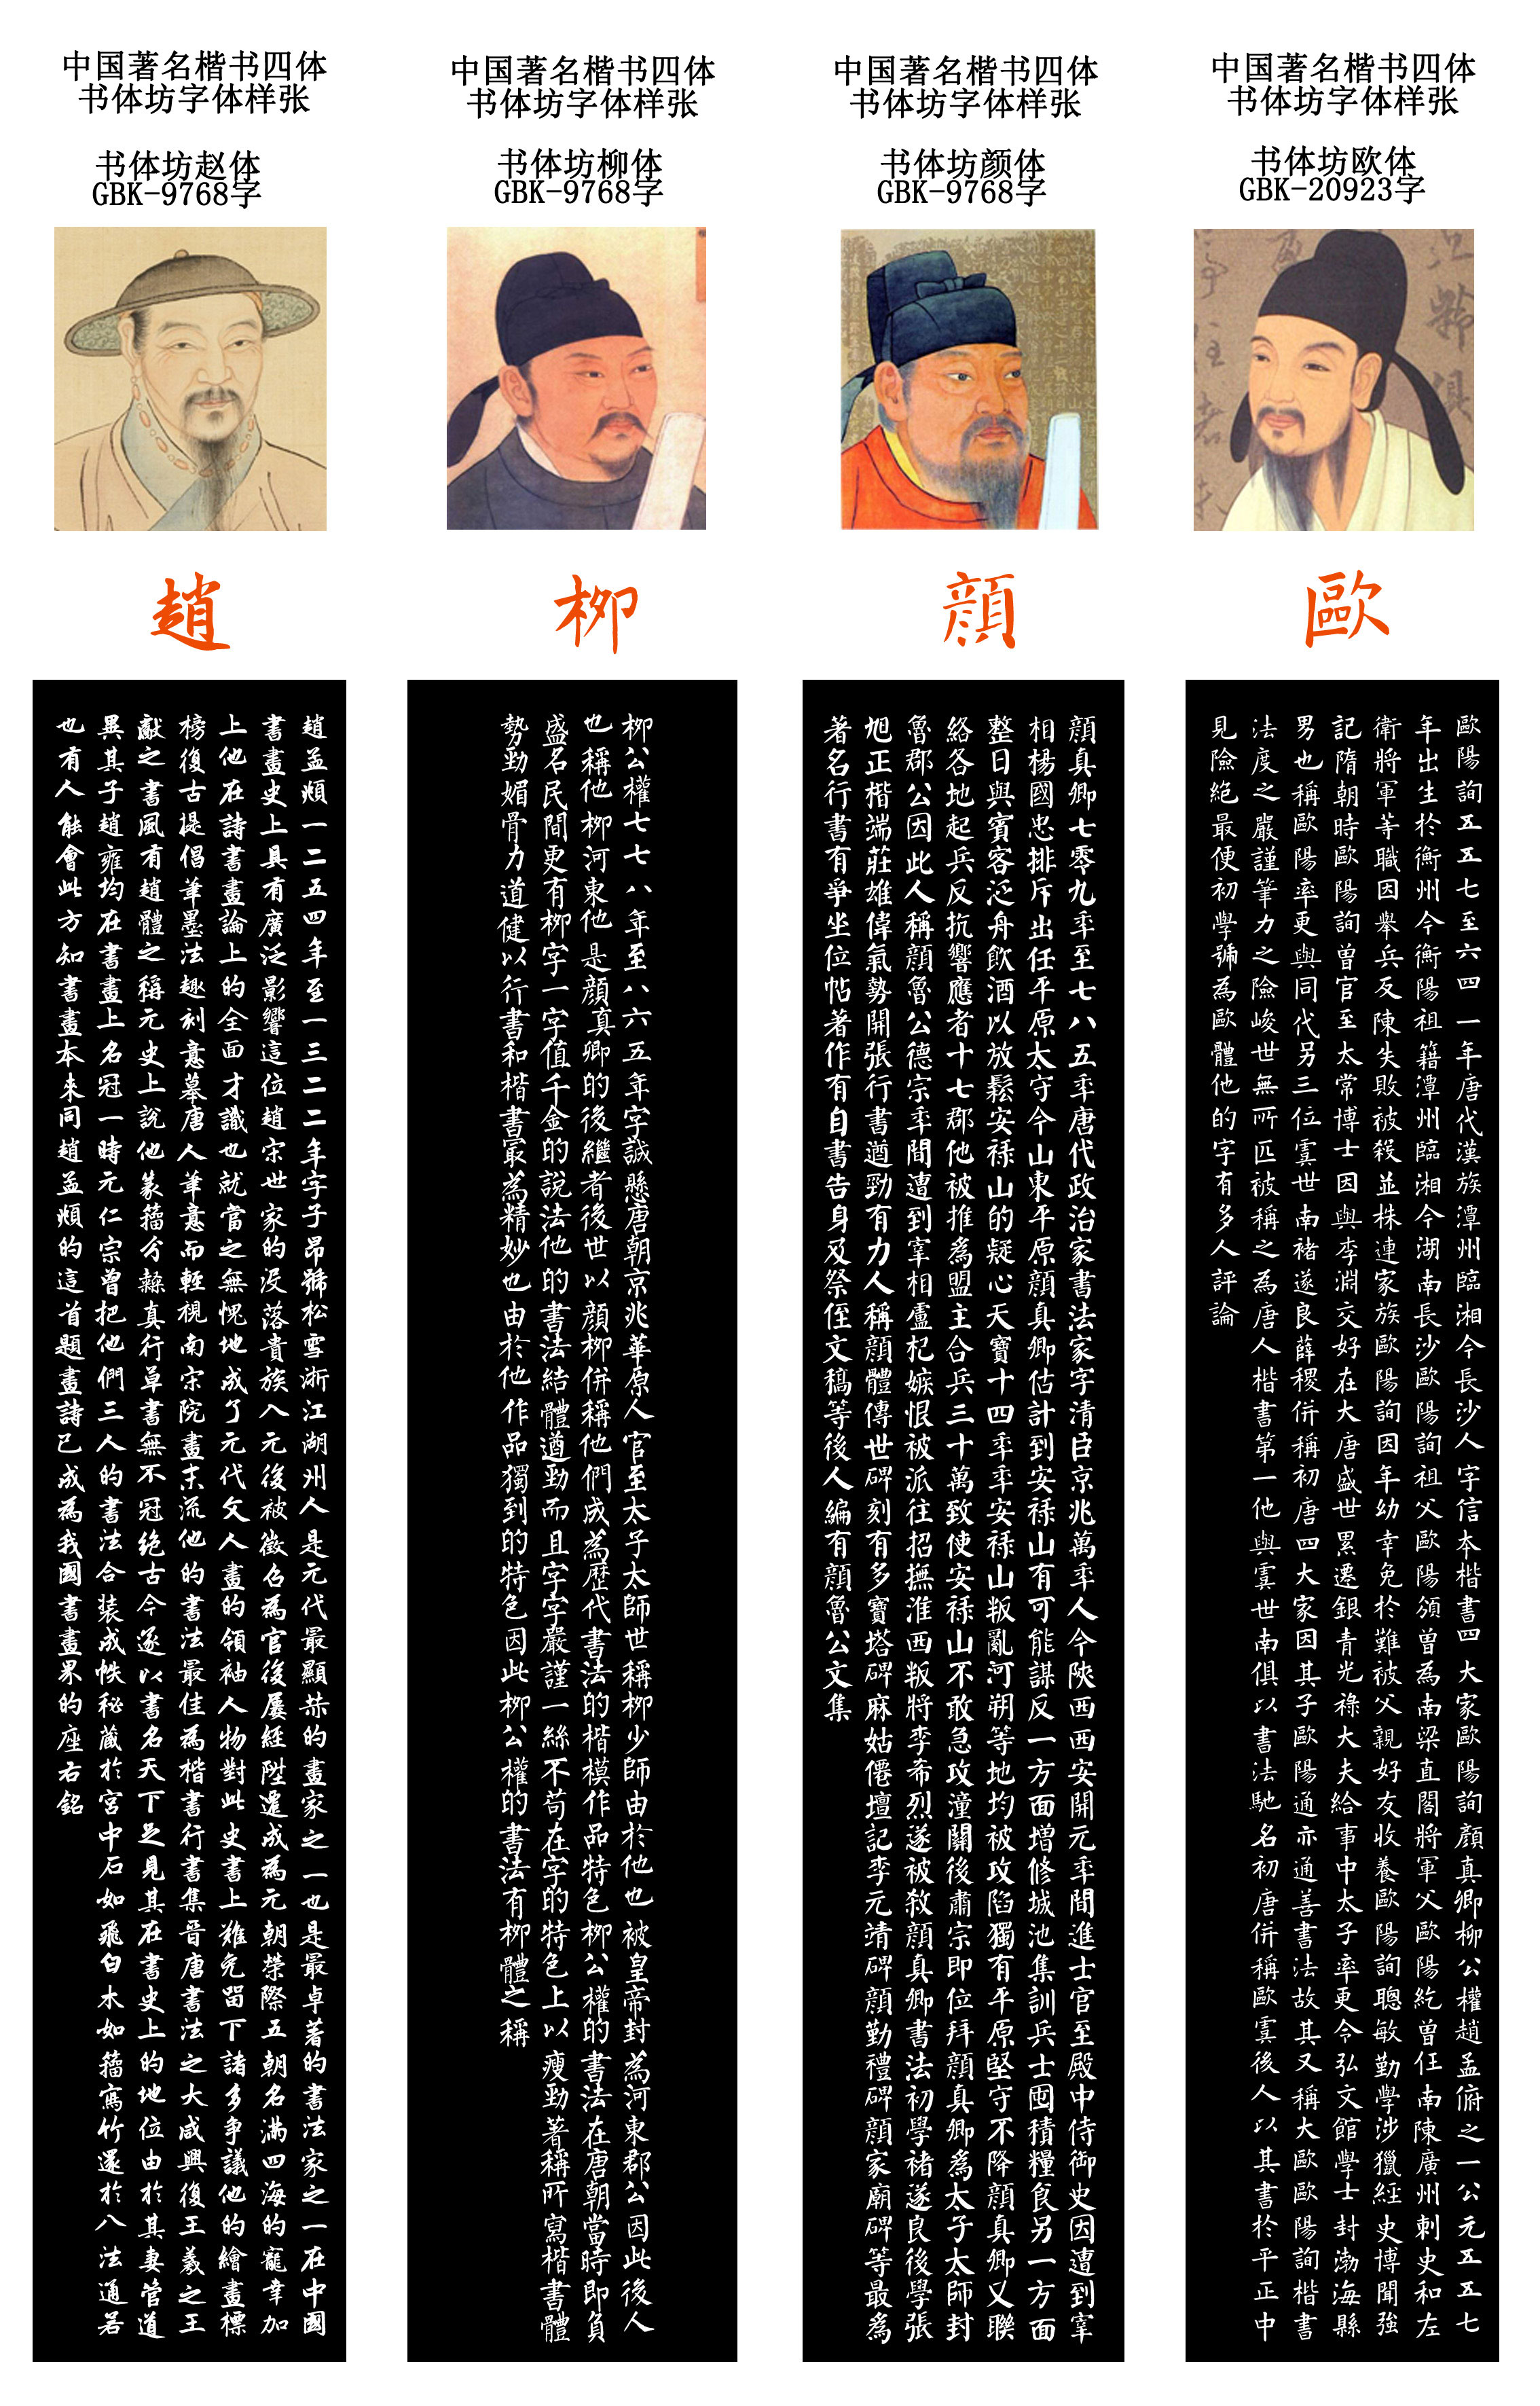 中国书法史上楷书四大名家颜,柳,赵,欧字体开发完成